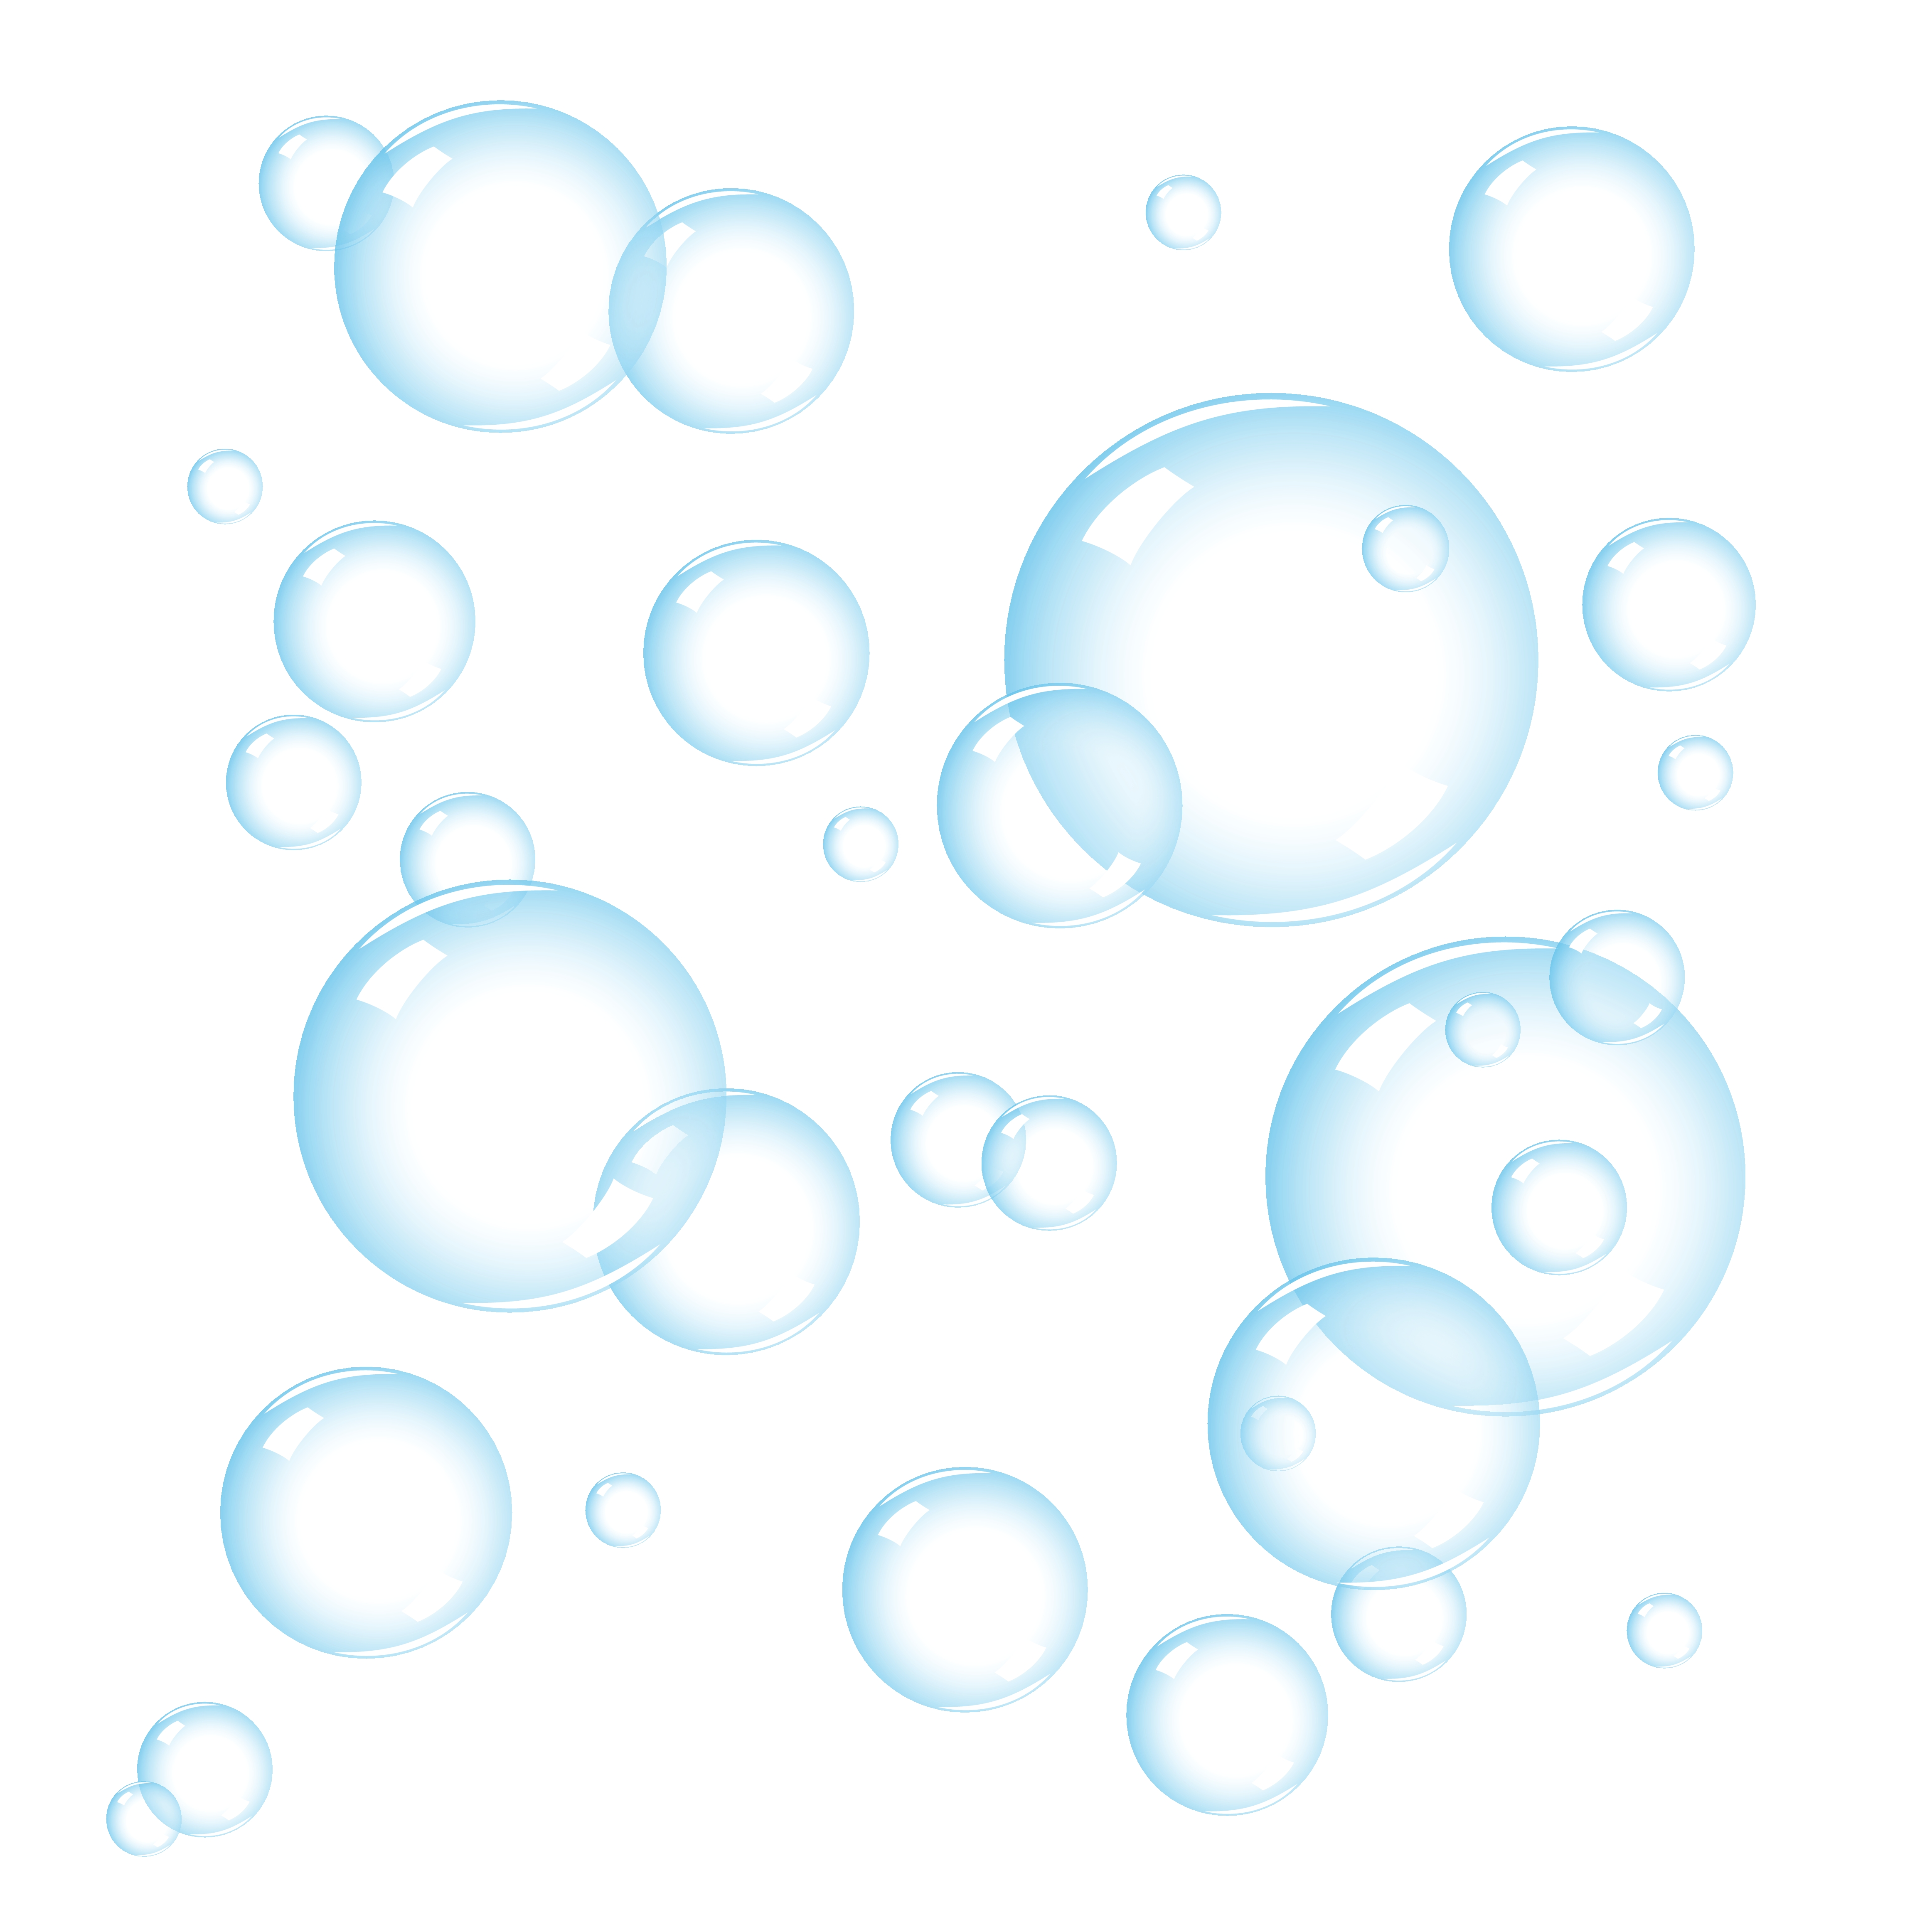 Bubbles And Transparent Soap 